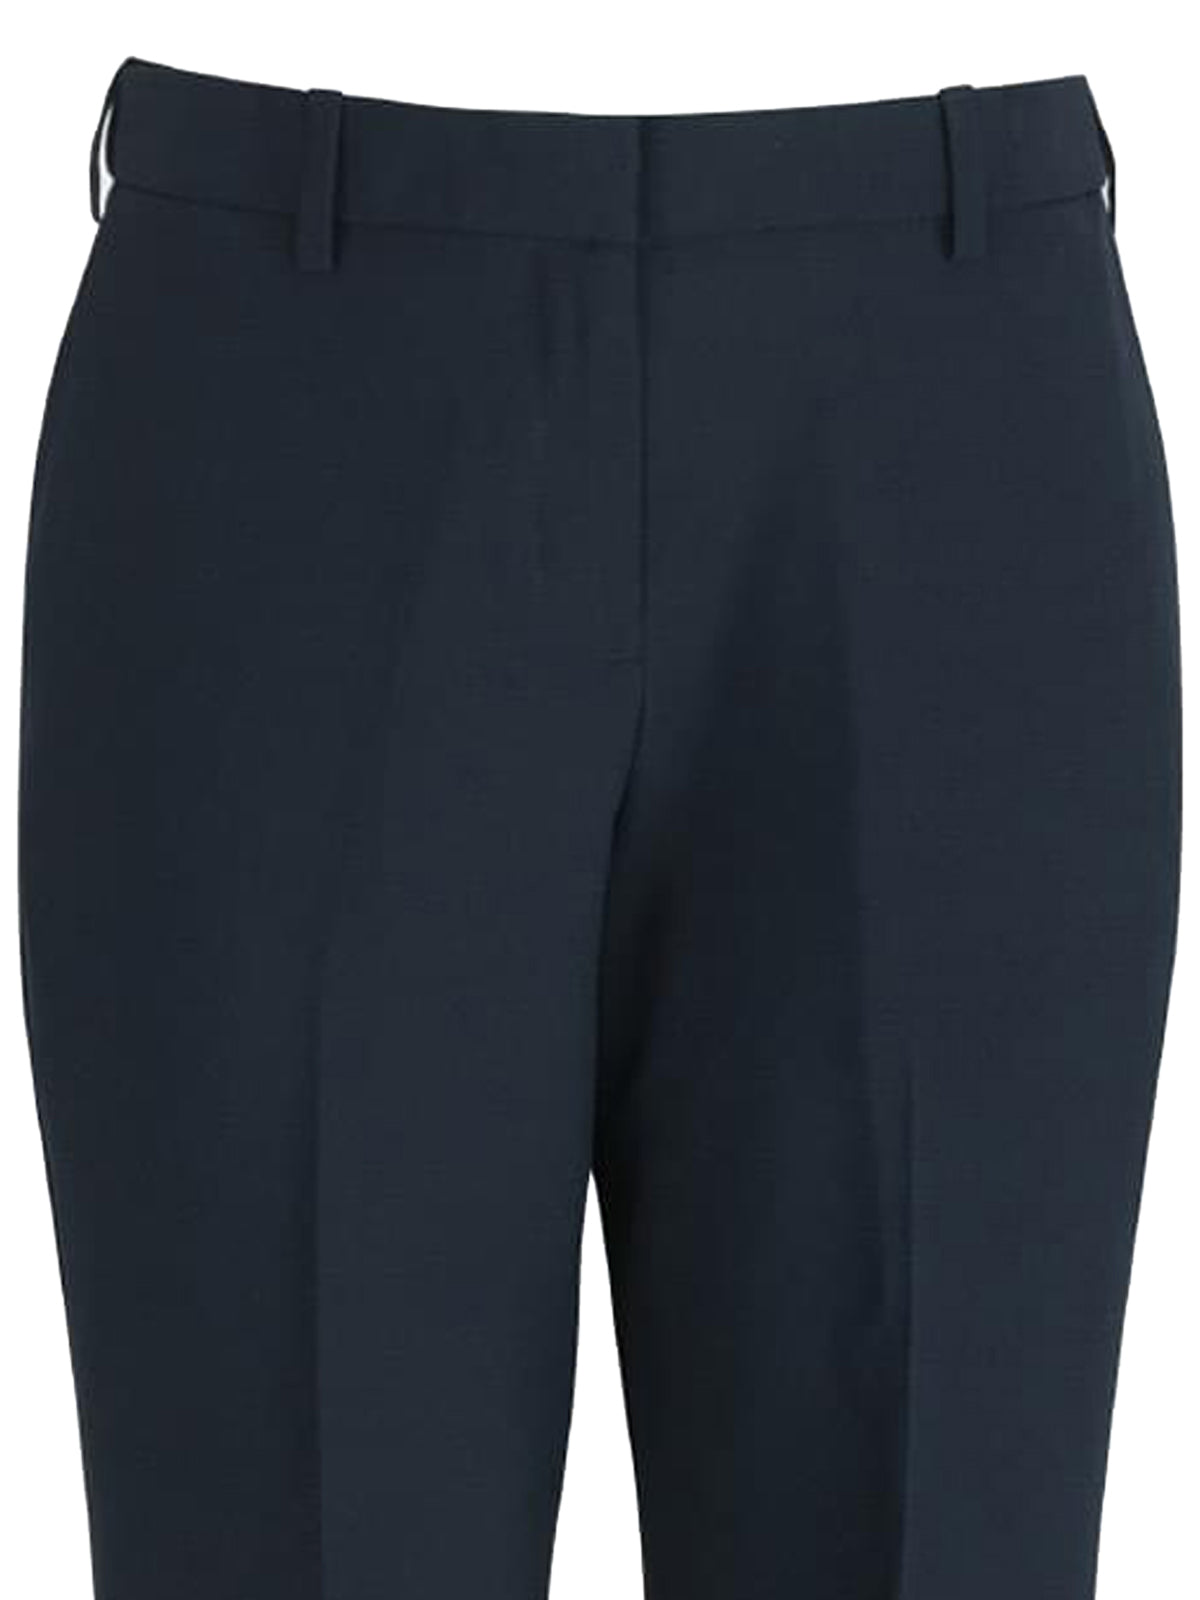 Women's EZ Fit Flat-Front Pant